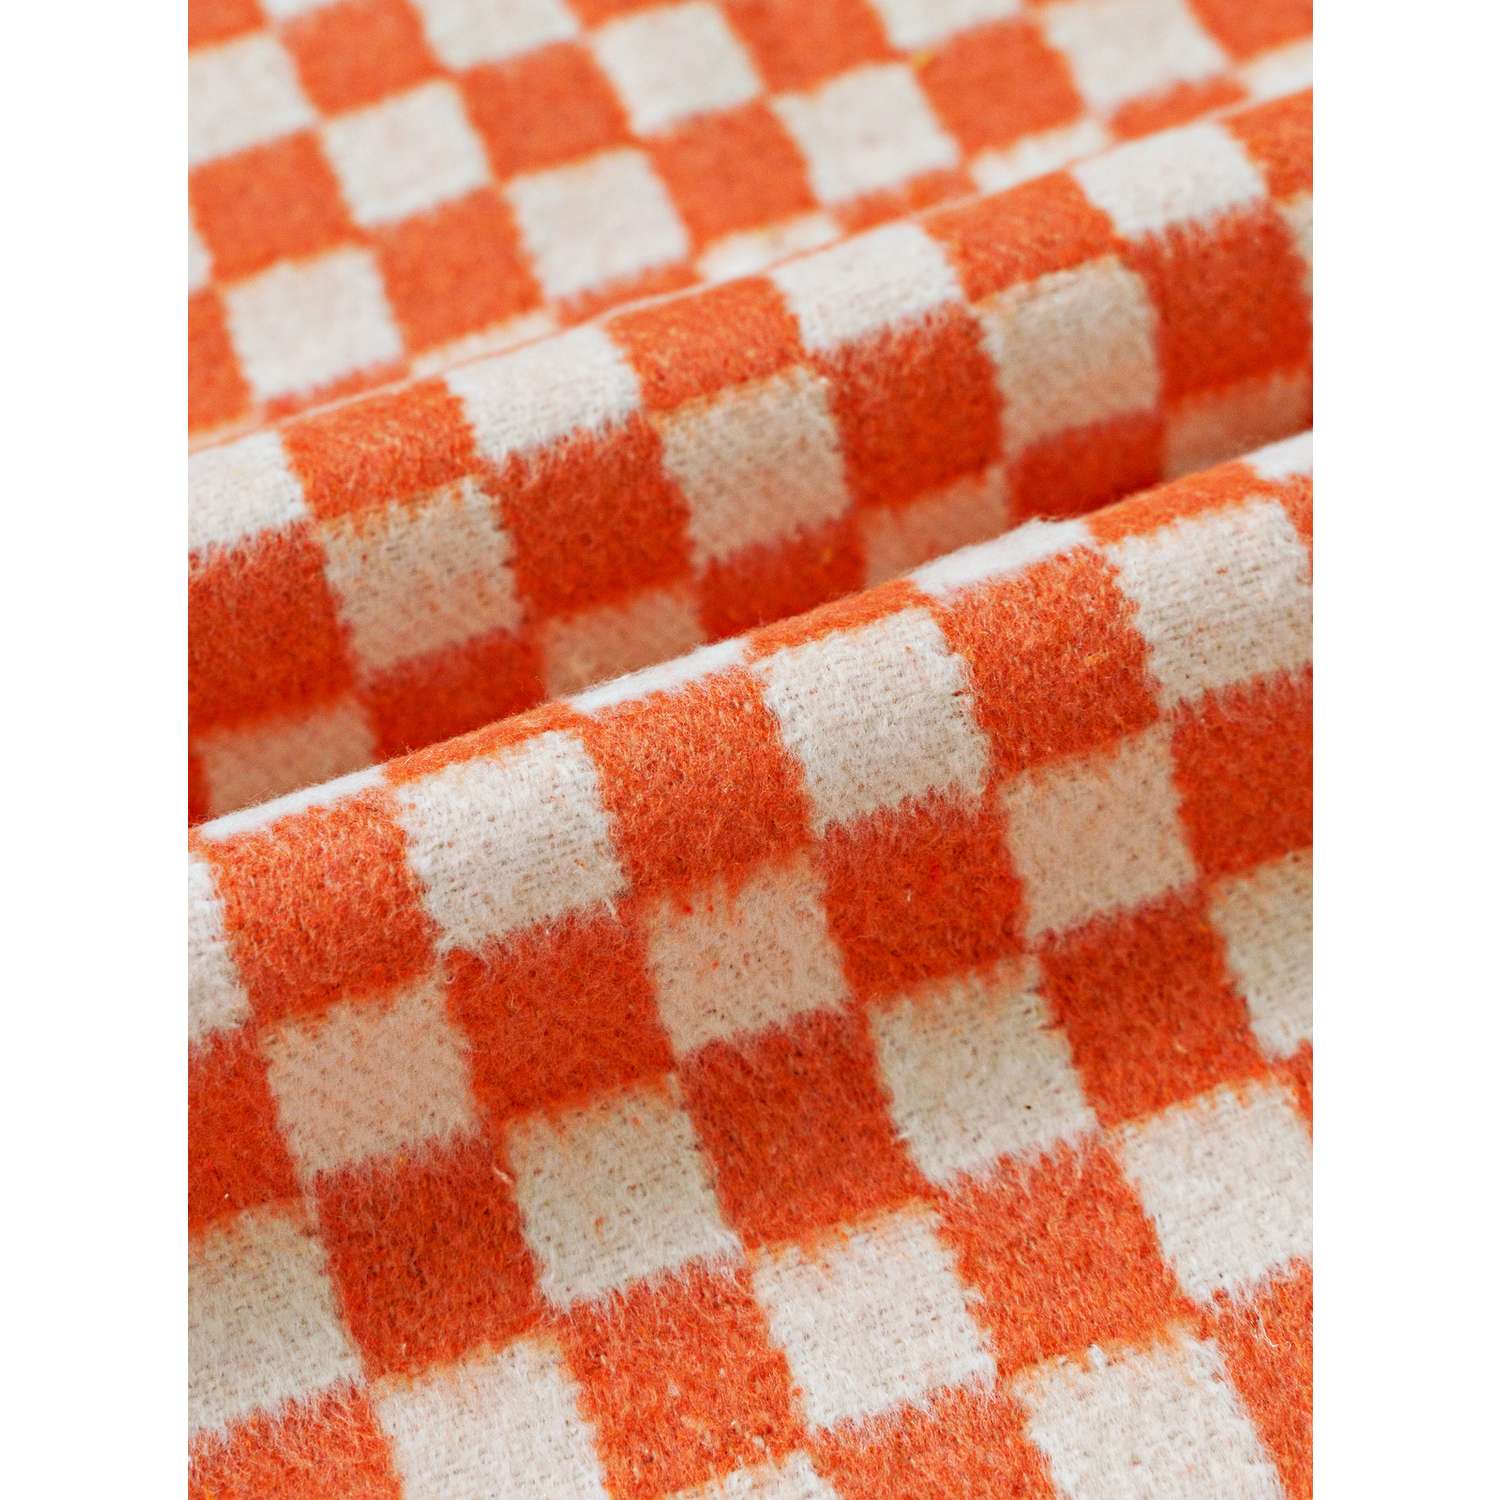 Одеяло байковое детское Суконная фабрика г. Шуя 100х140 рисунок клетка оранжевый - фото 1